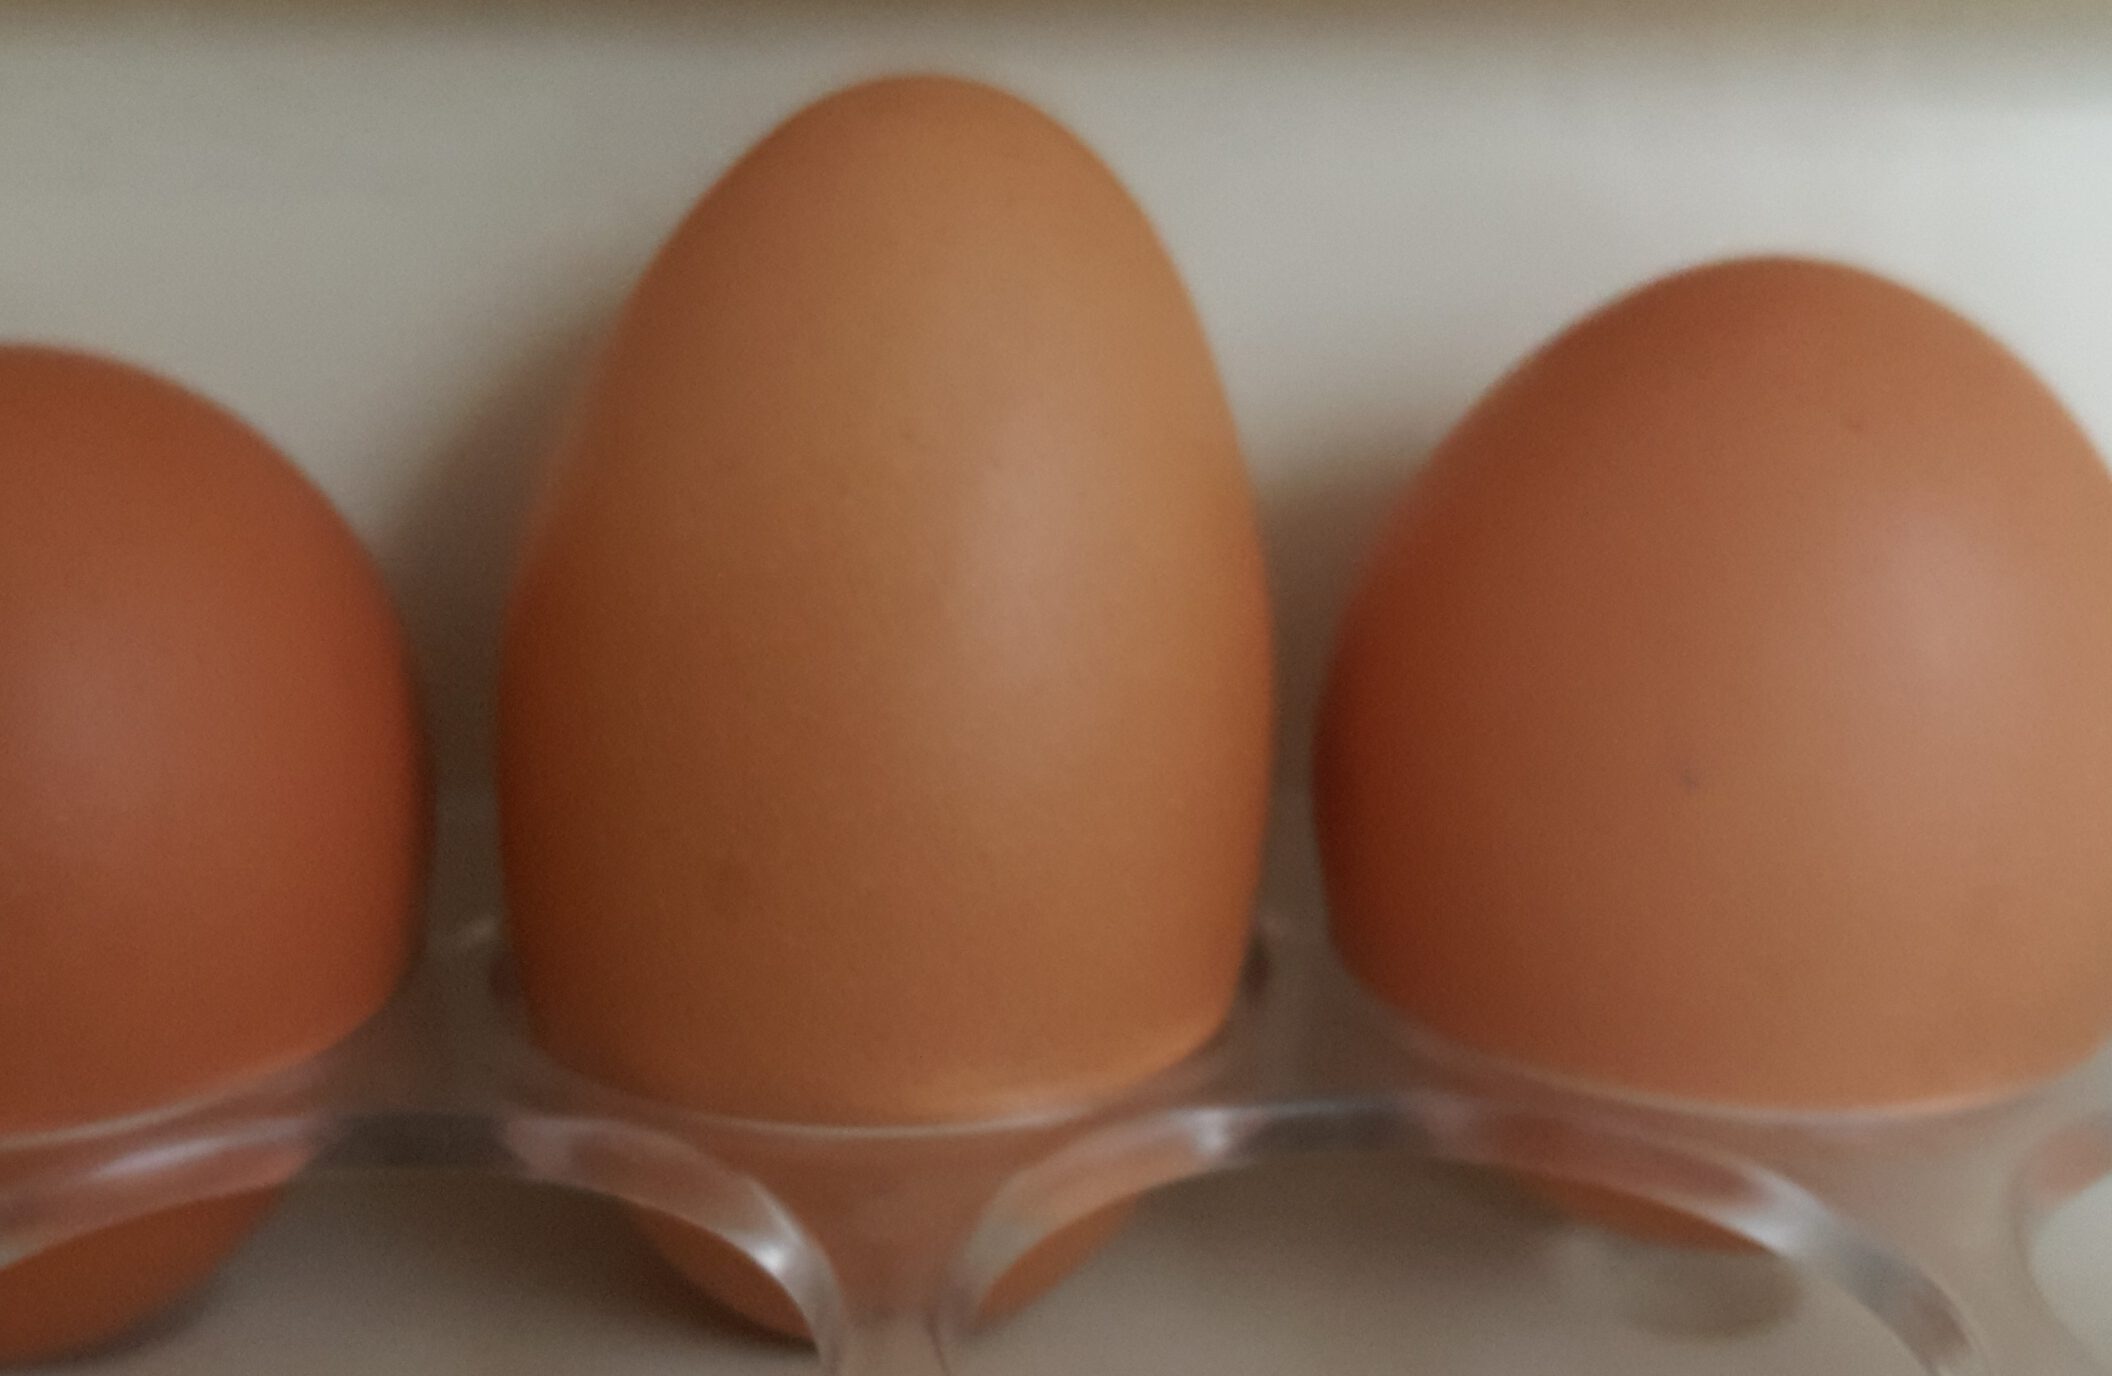 Is Eating Eggs Healthy? 吃鸡蛋健康吗?